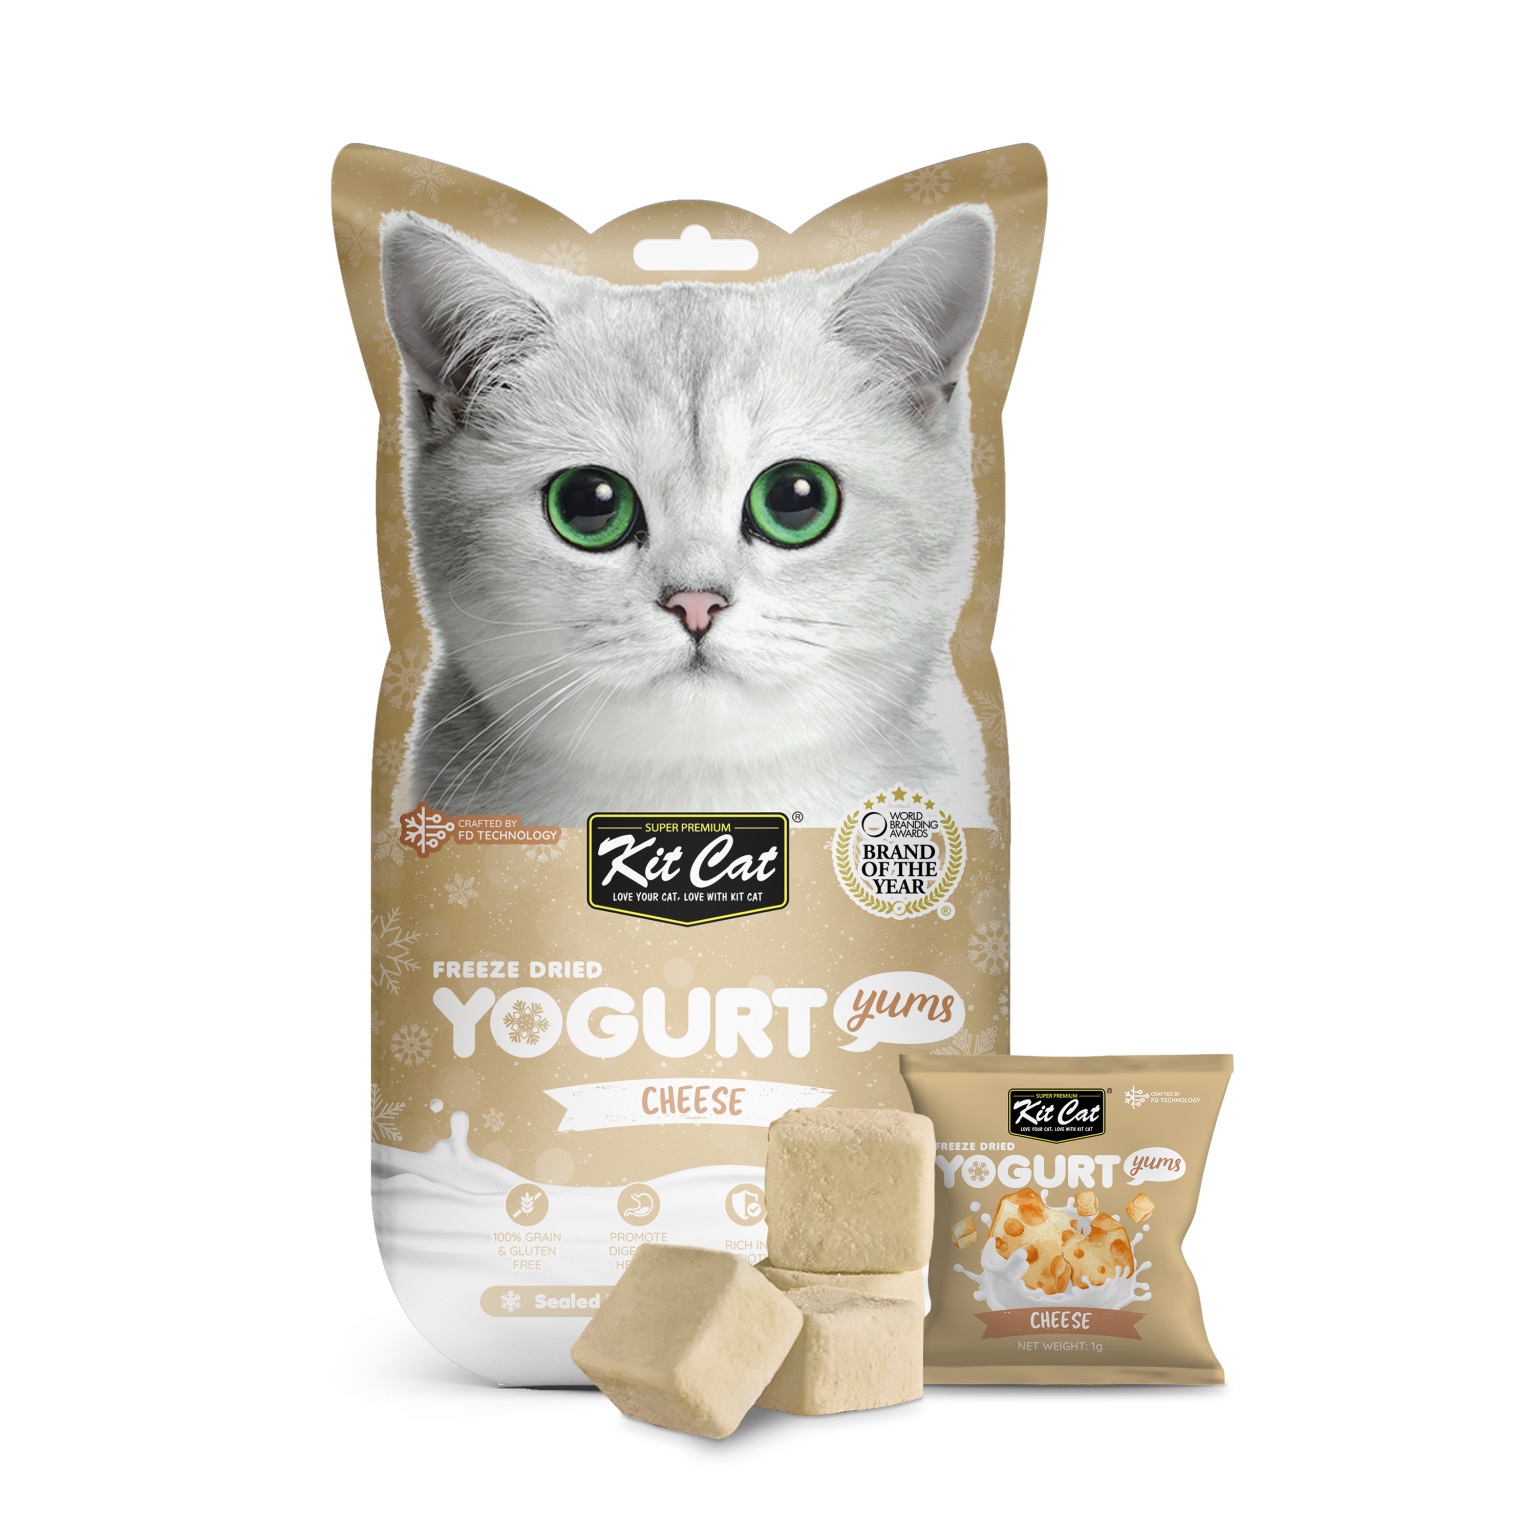 Sữa chua sấy thăng hoa Kit Cat cho mèo _ Freeze Dried Yogurt Yums Cat Treat [ Túi 10 viên